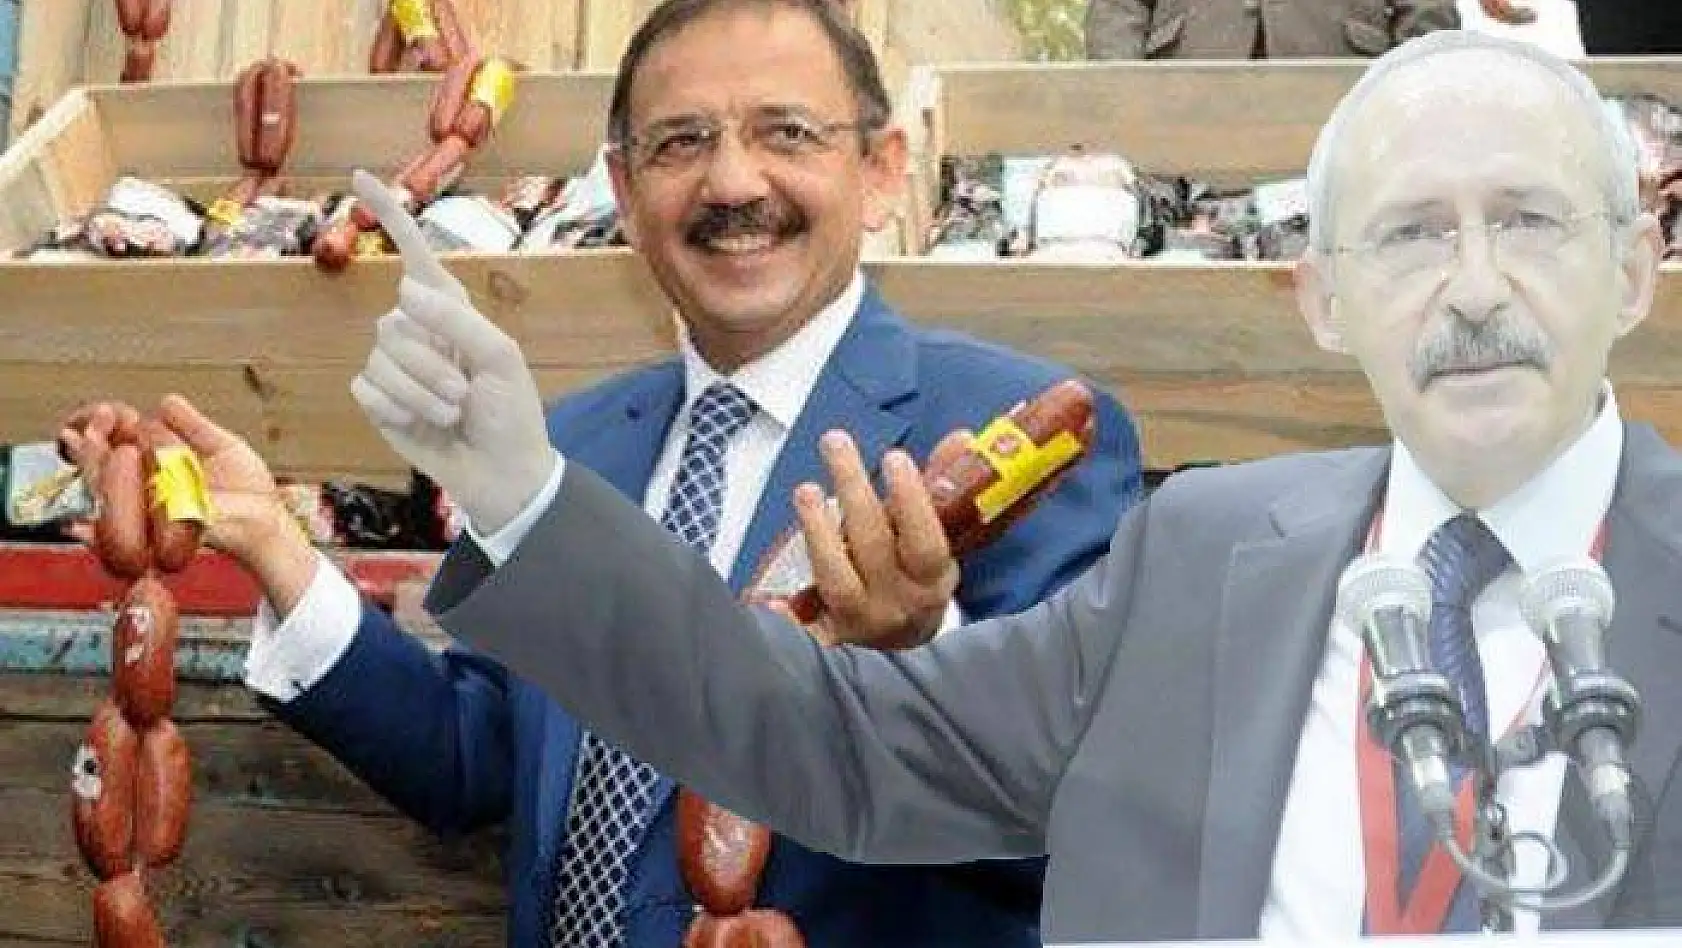  Kılıçdaroğlu, Özhaseki'den sucuk parasını geri aldı